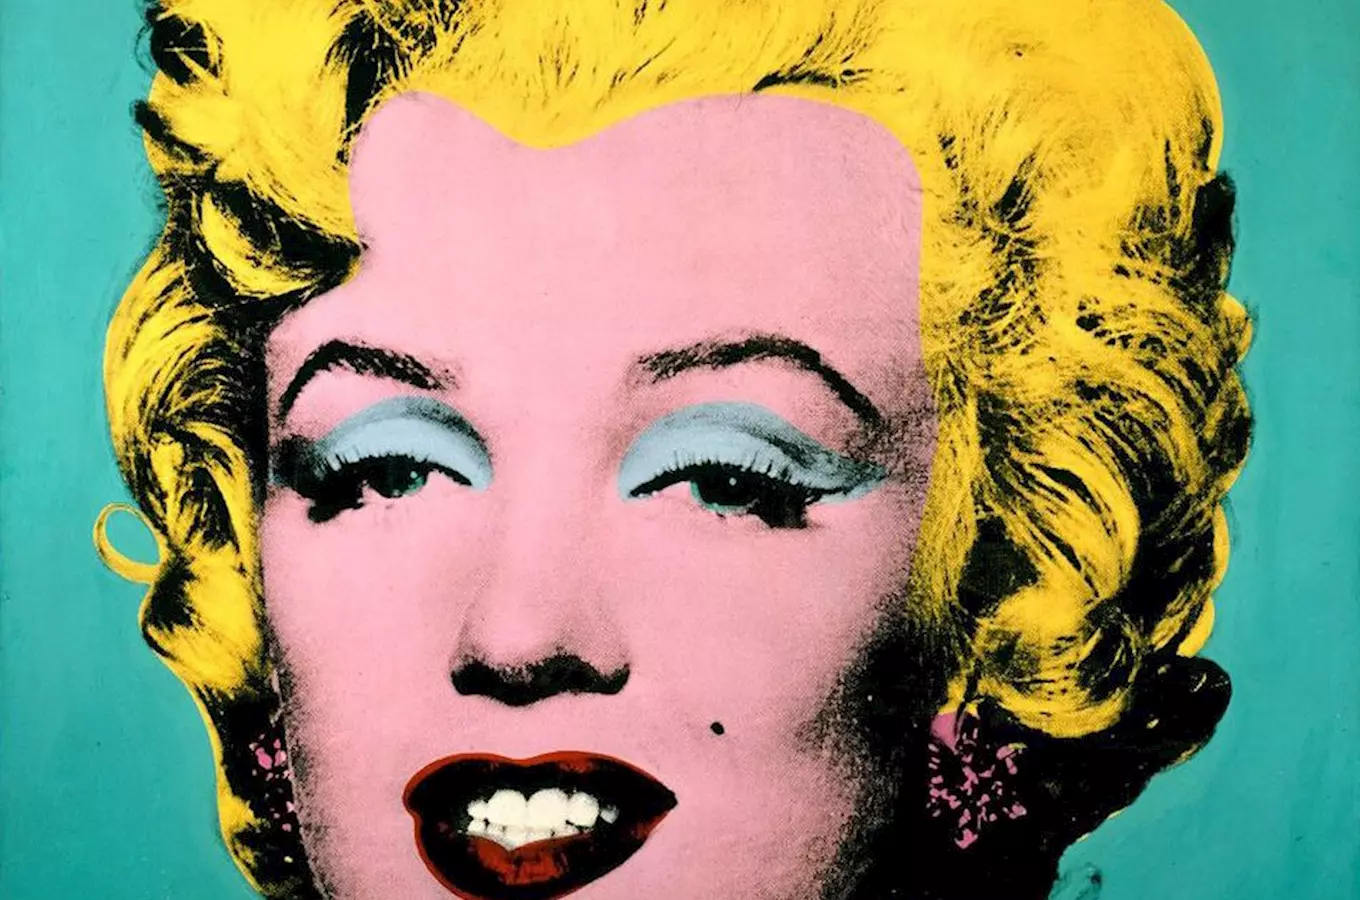 Alšova jihoceská galerie pripravila výstavní projekt Andy Warhol - Zlatá šedesátá